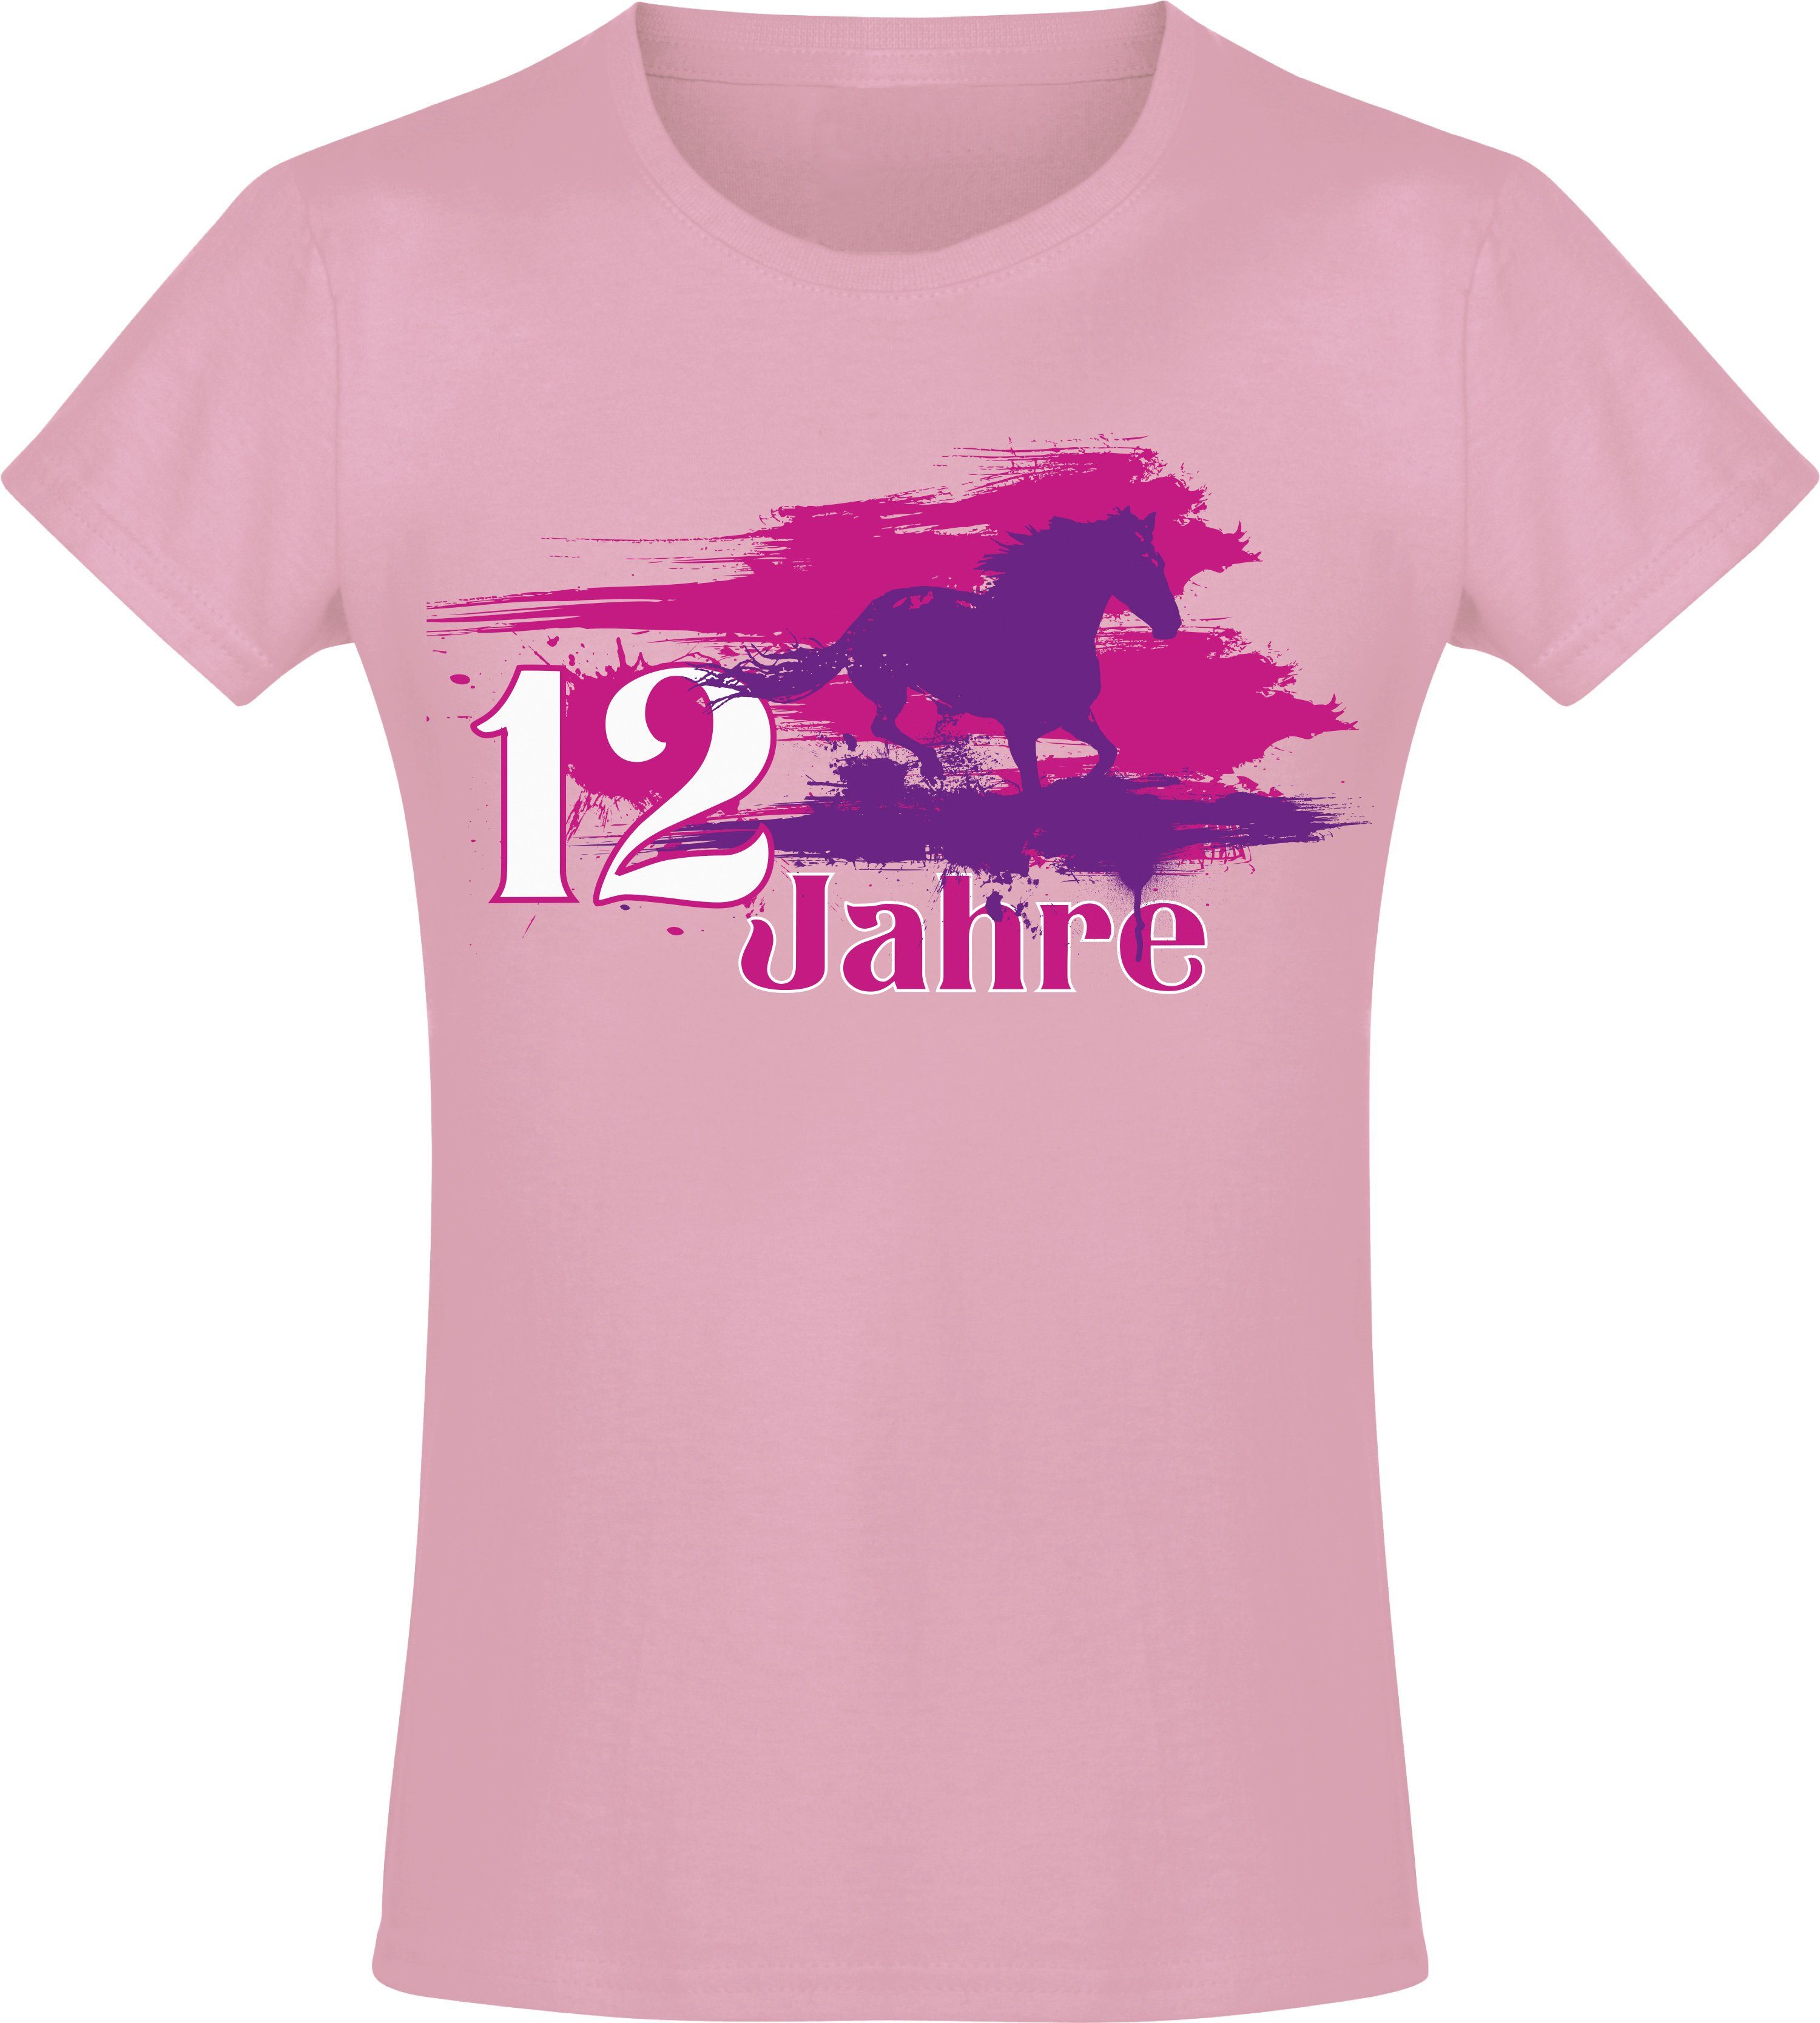 Baddery Print-Shirt Geburtstagsgeschenk für Mädchen : Geburtstagspferd 12 Jahre hochwertiger Siebdruck, aus Baumwolle